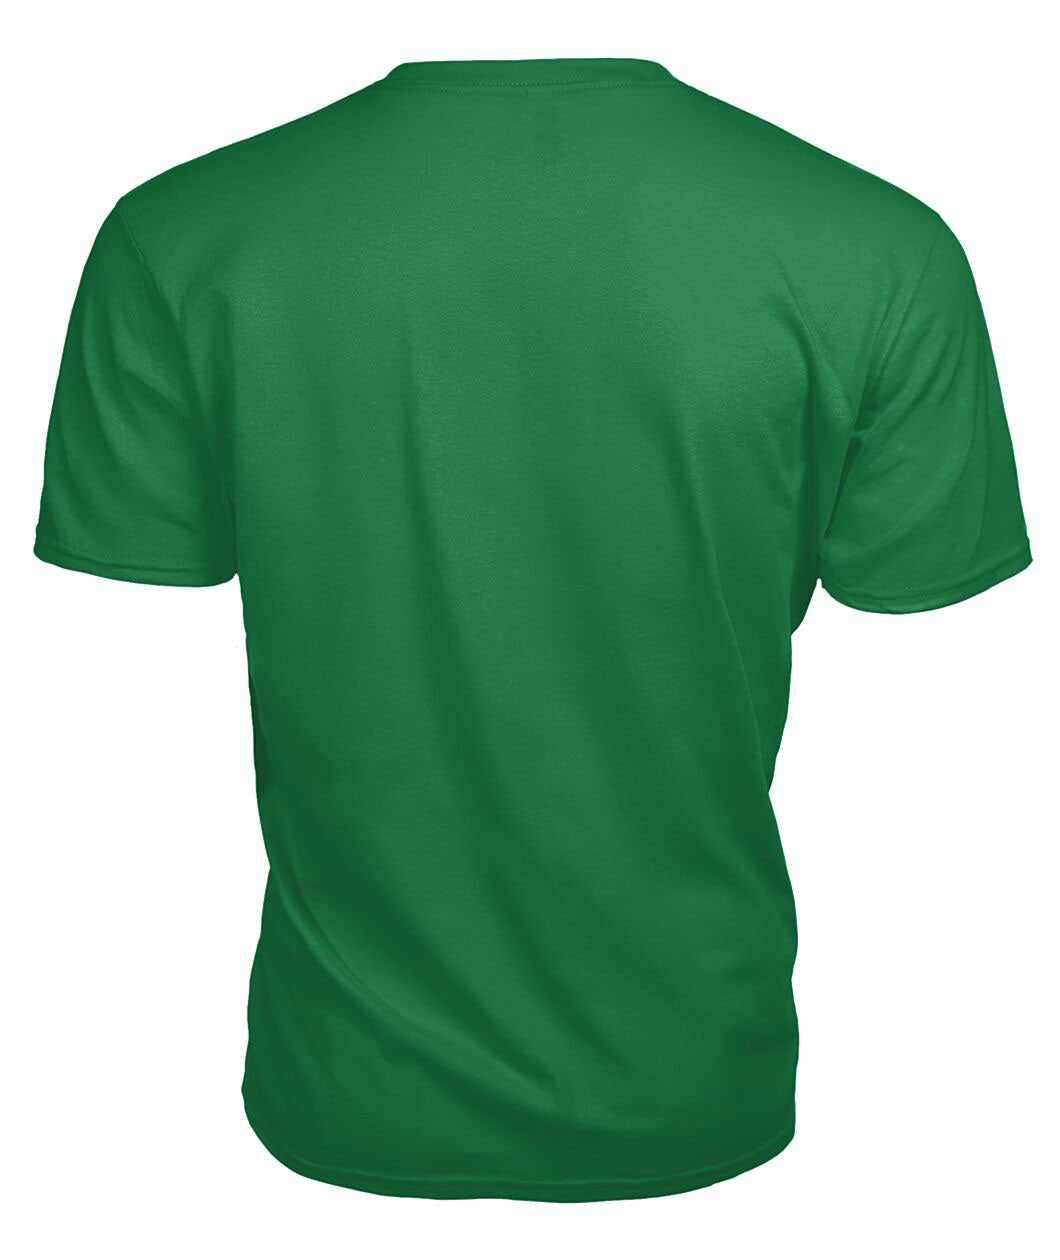 Glen Tartan Crest 2D T-shirt - Blood Runs Through My Veins Style